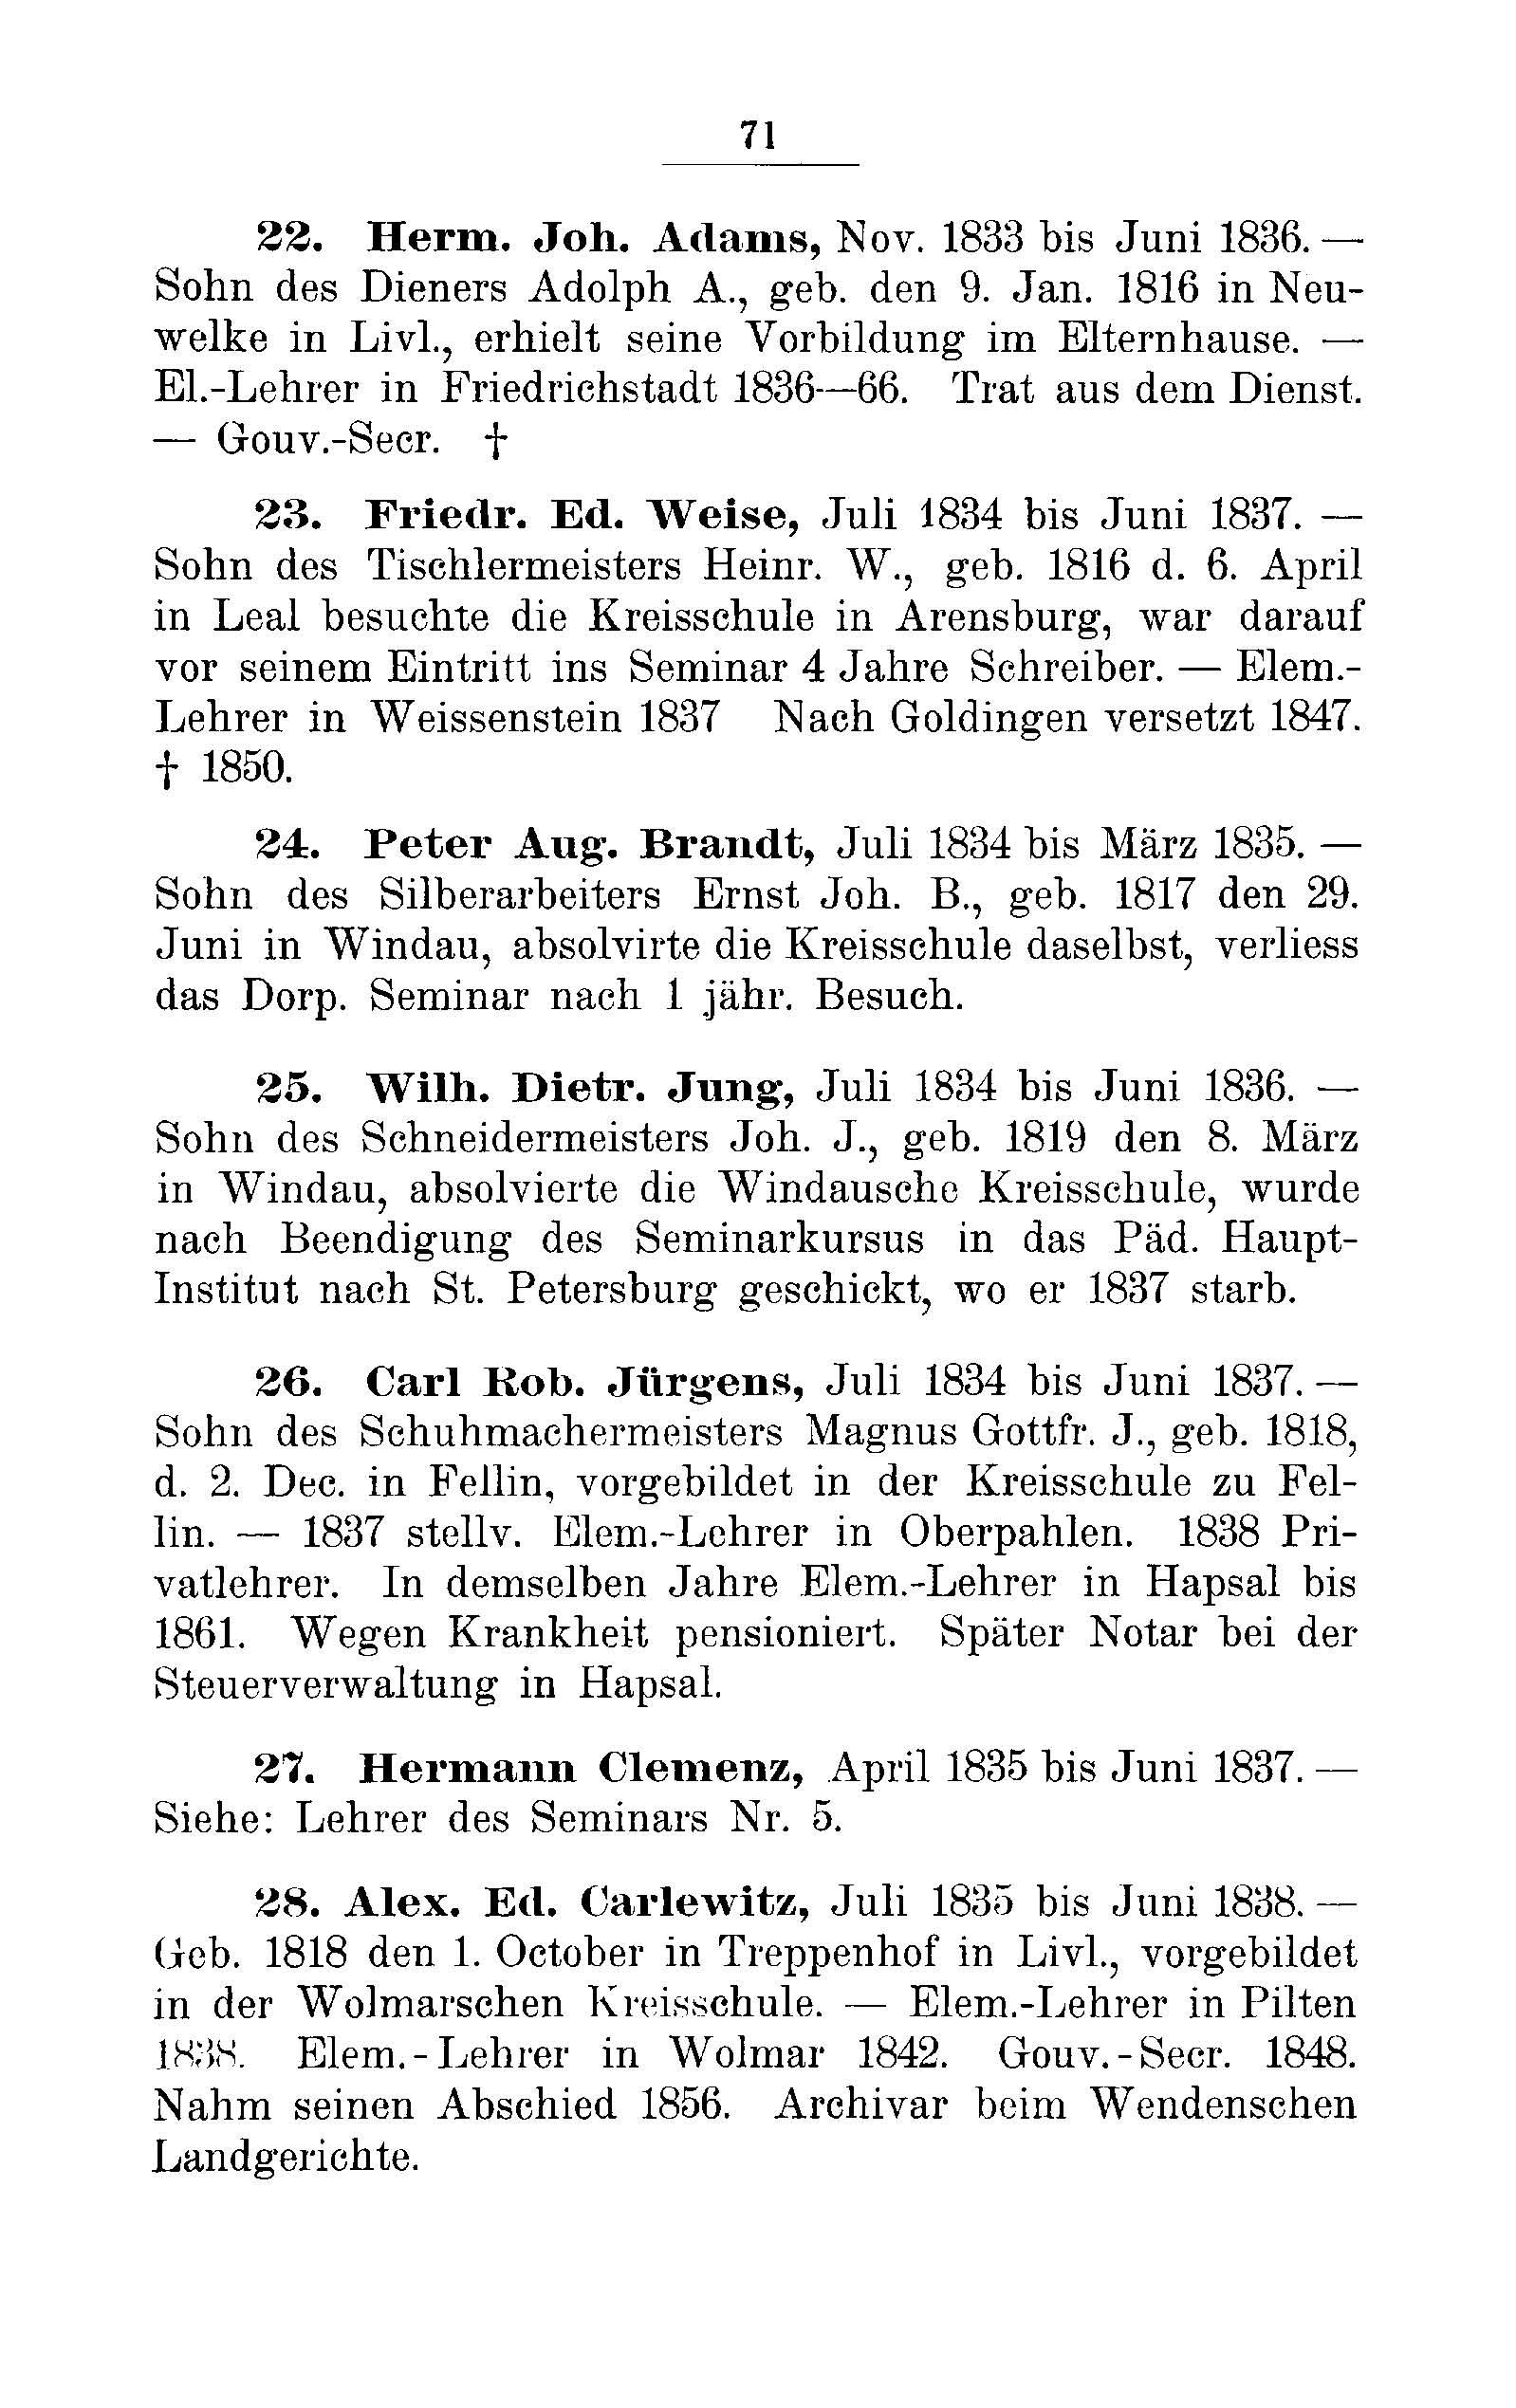 Das Erste Dorpatsche Lehrer-Seminar (1890) | 74. Main body of text